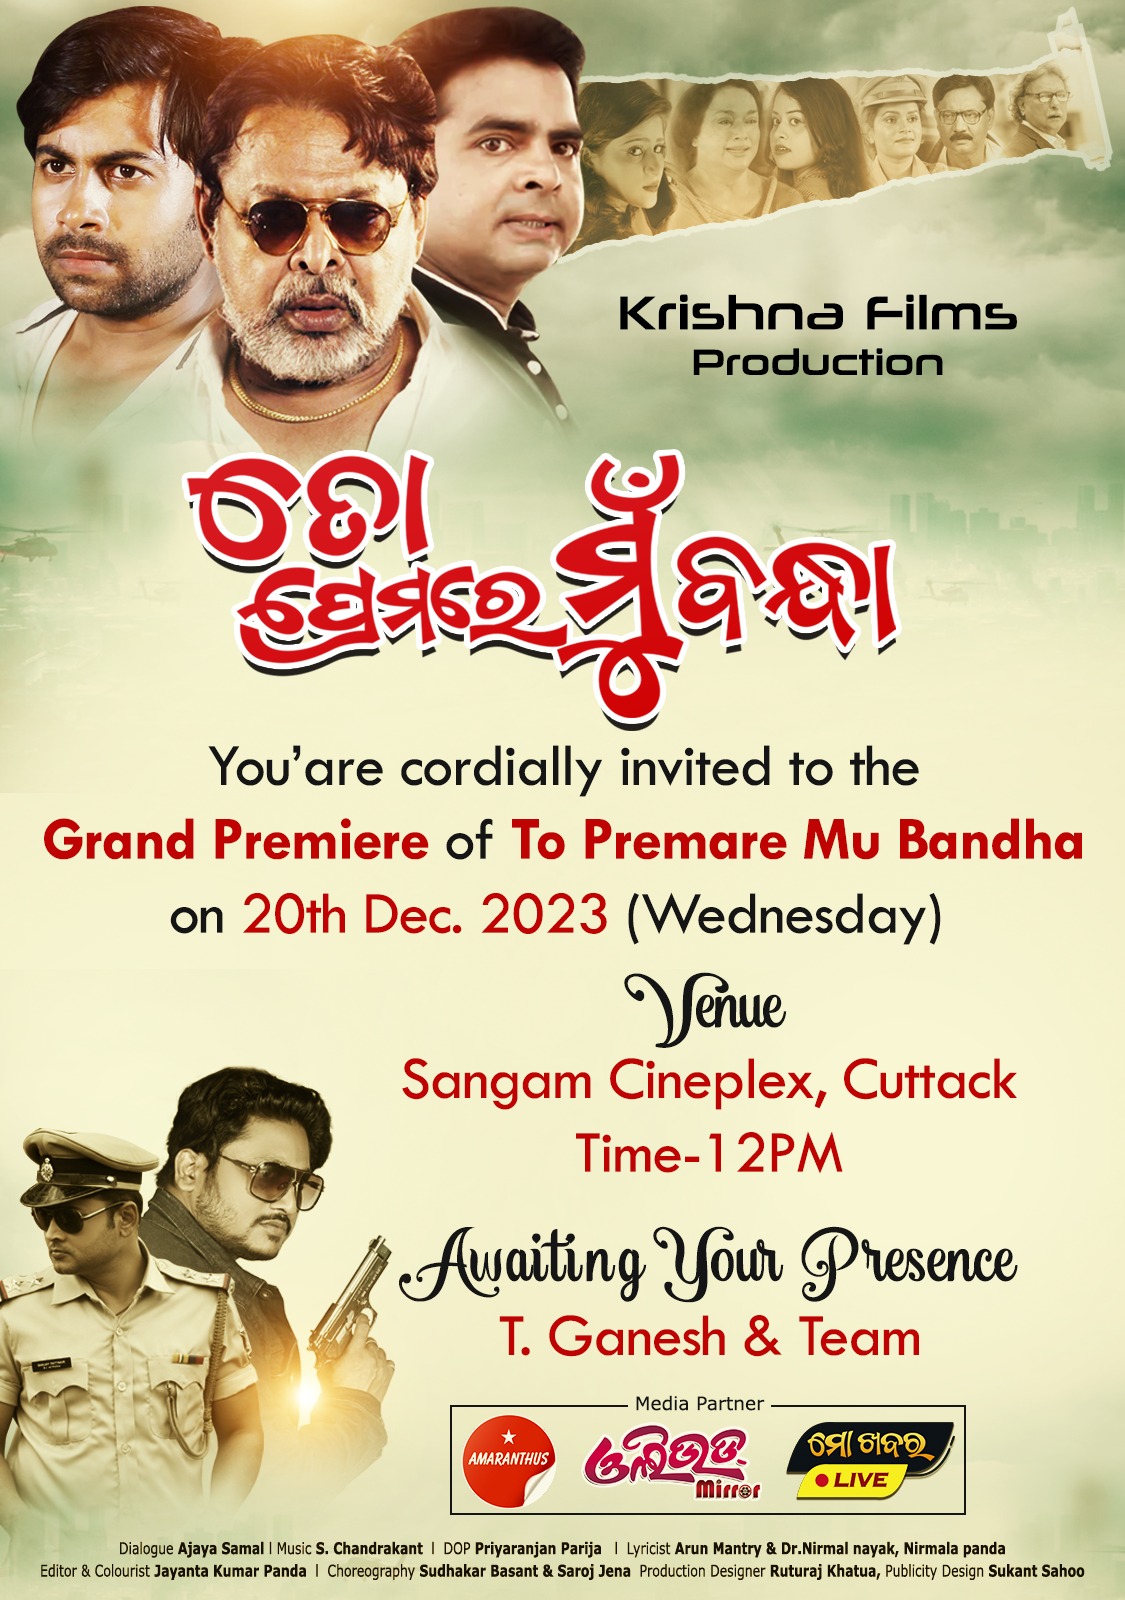 'To Premare Mu Bandha' premiere show invitation